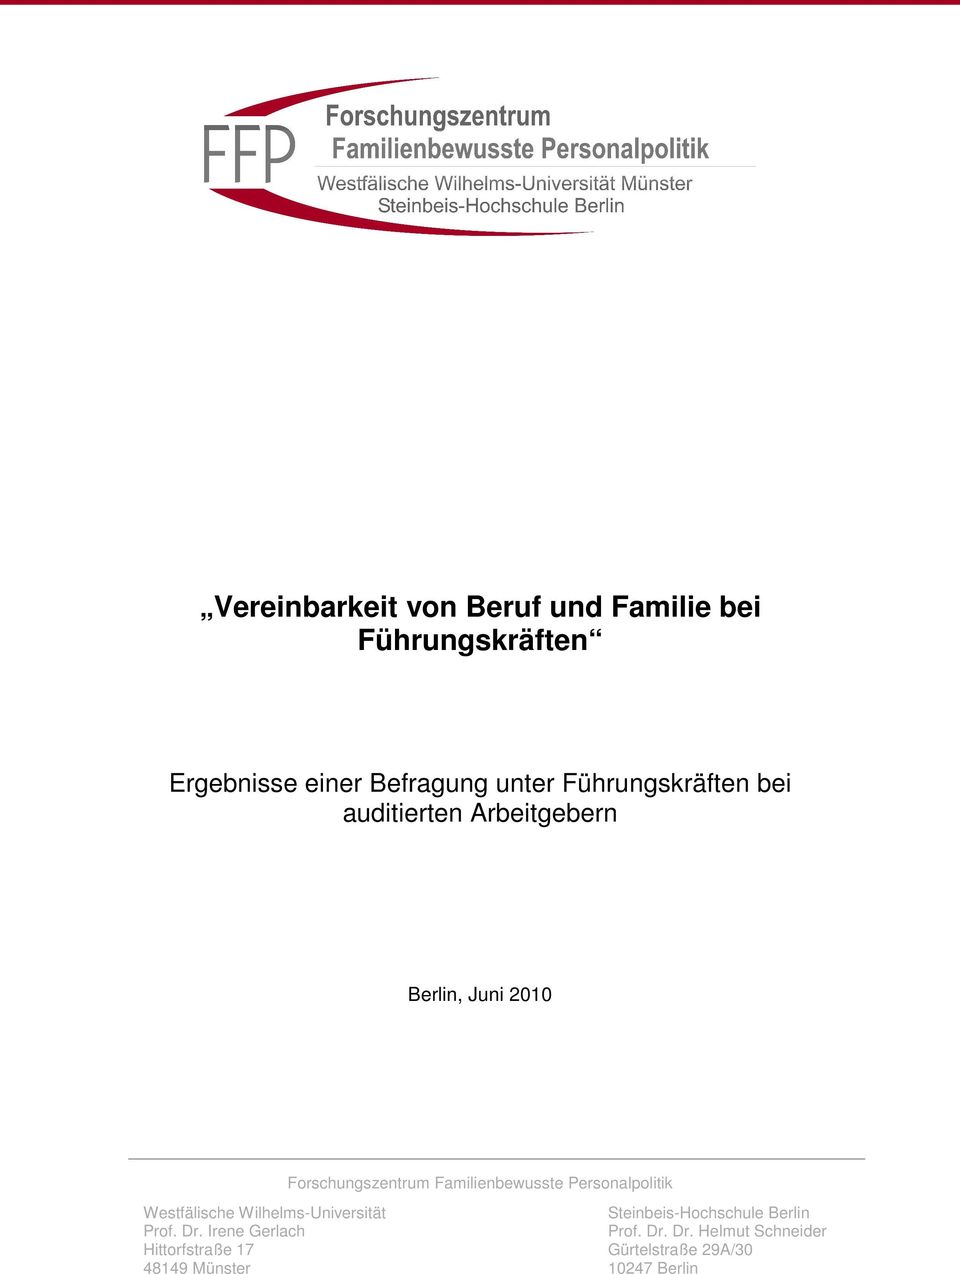 Familienbewusste Personalpolitik Westfälische Wilhelms-Universität Steinbeis-Hochschule Berlin